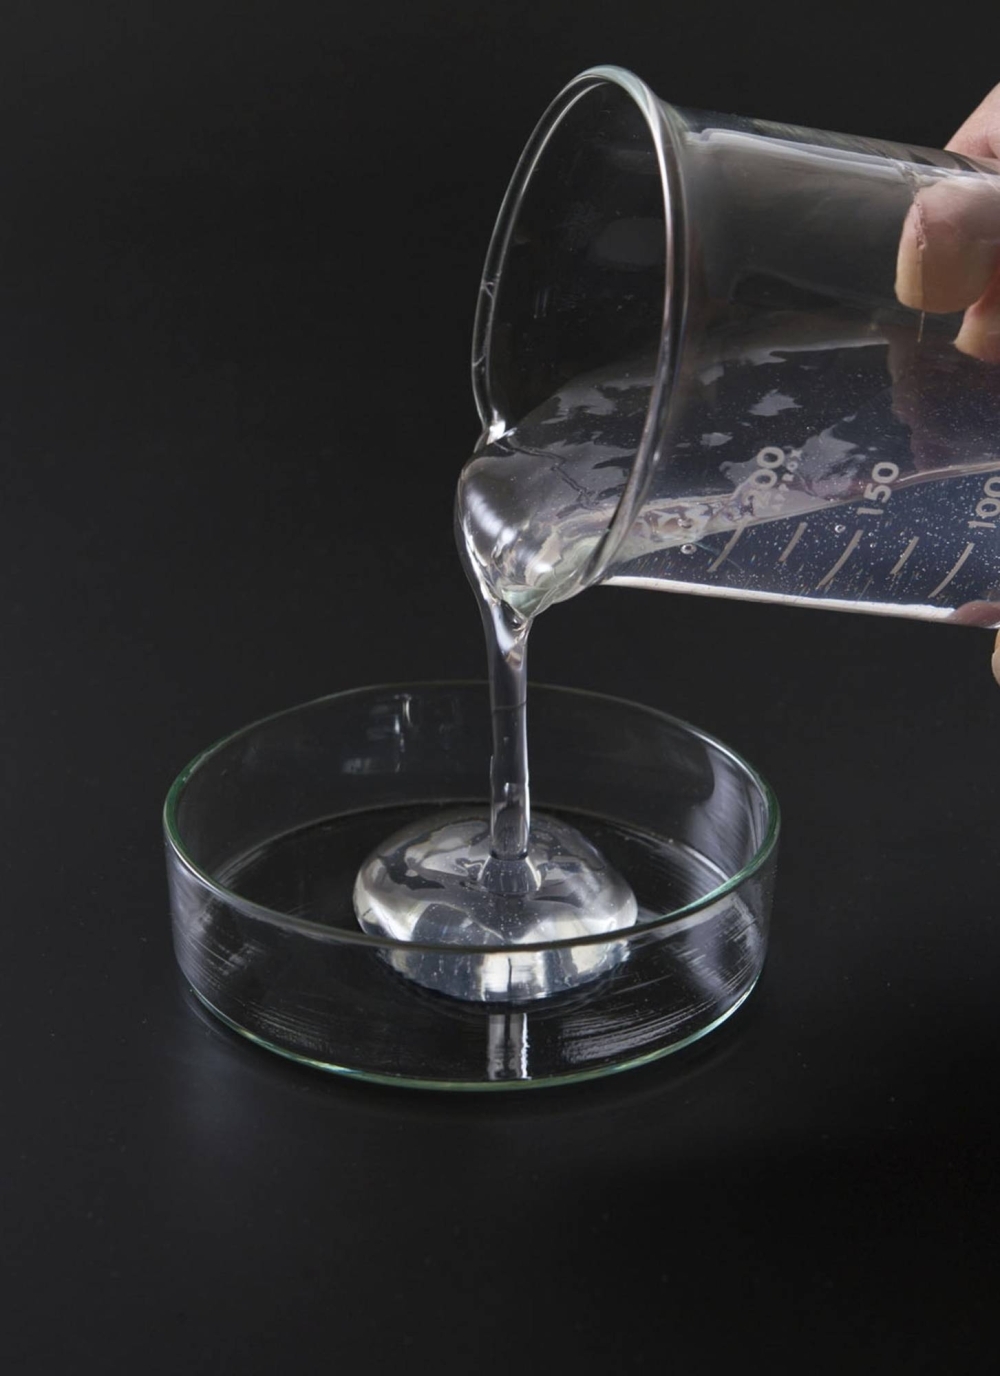 Liquid containing cellulose nanofiber